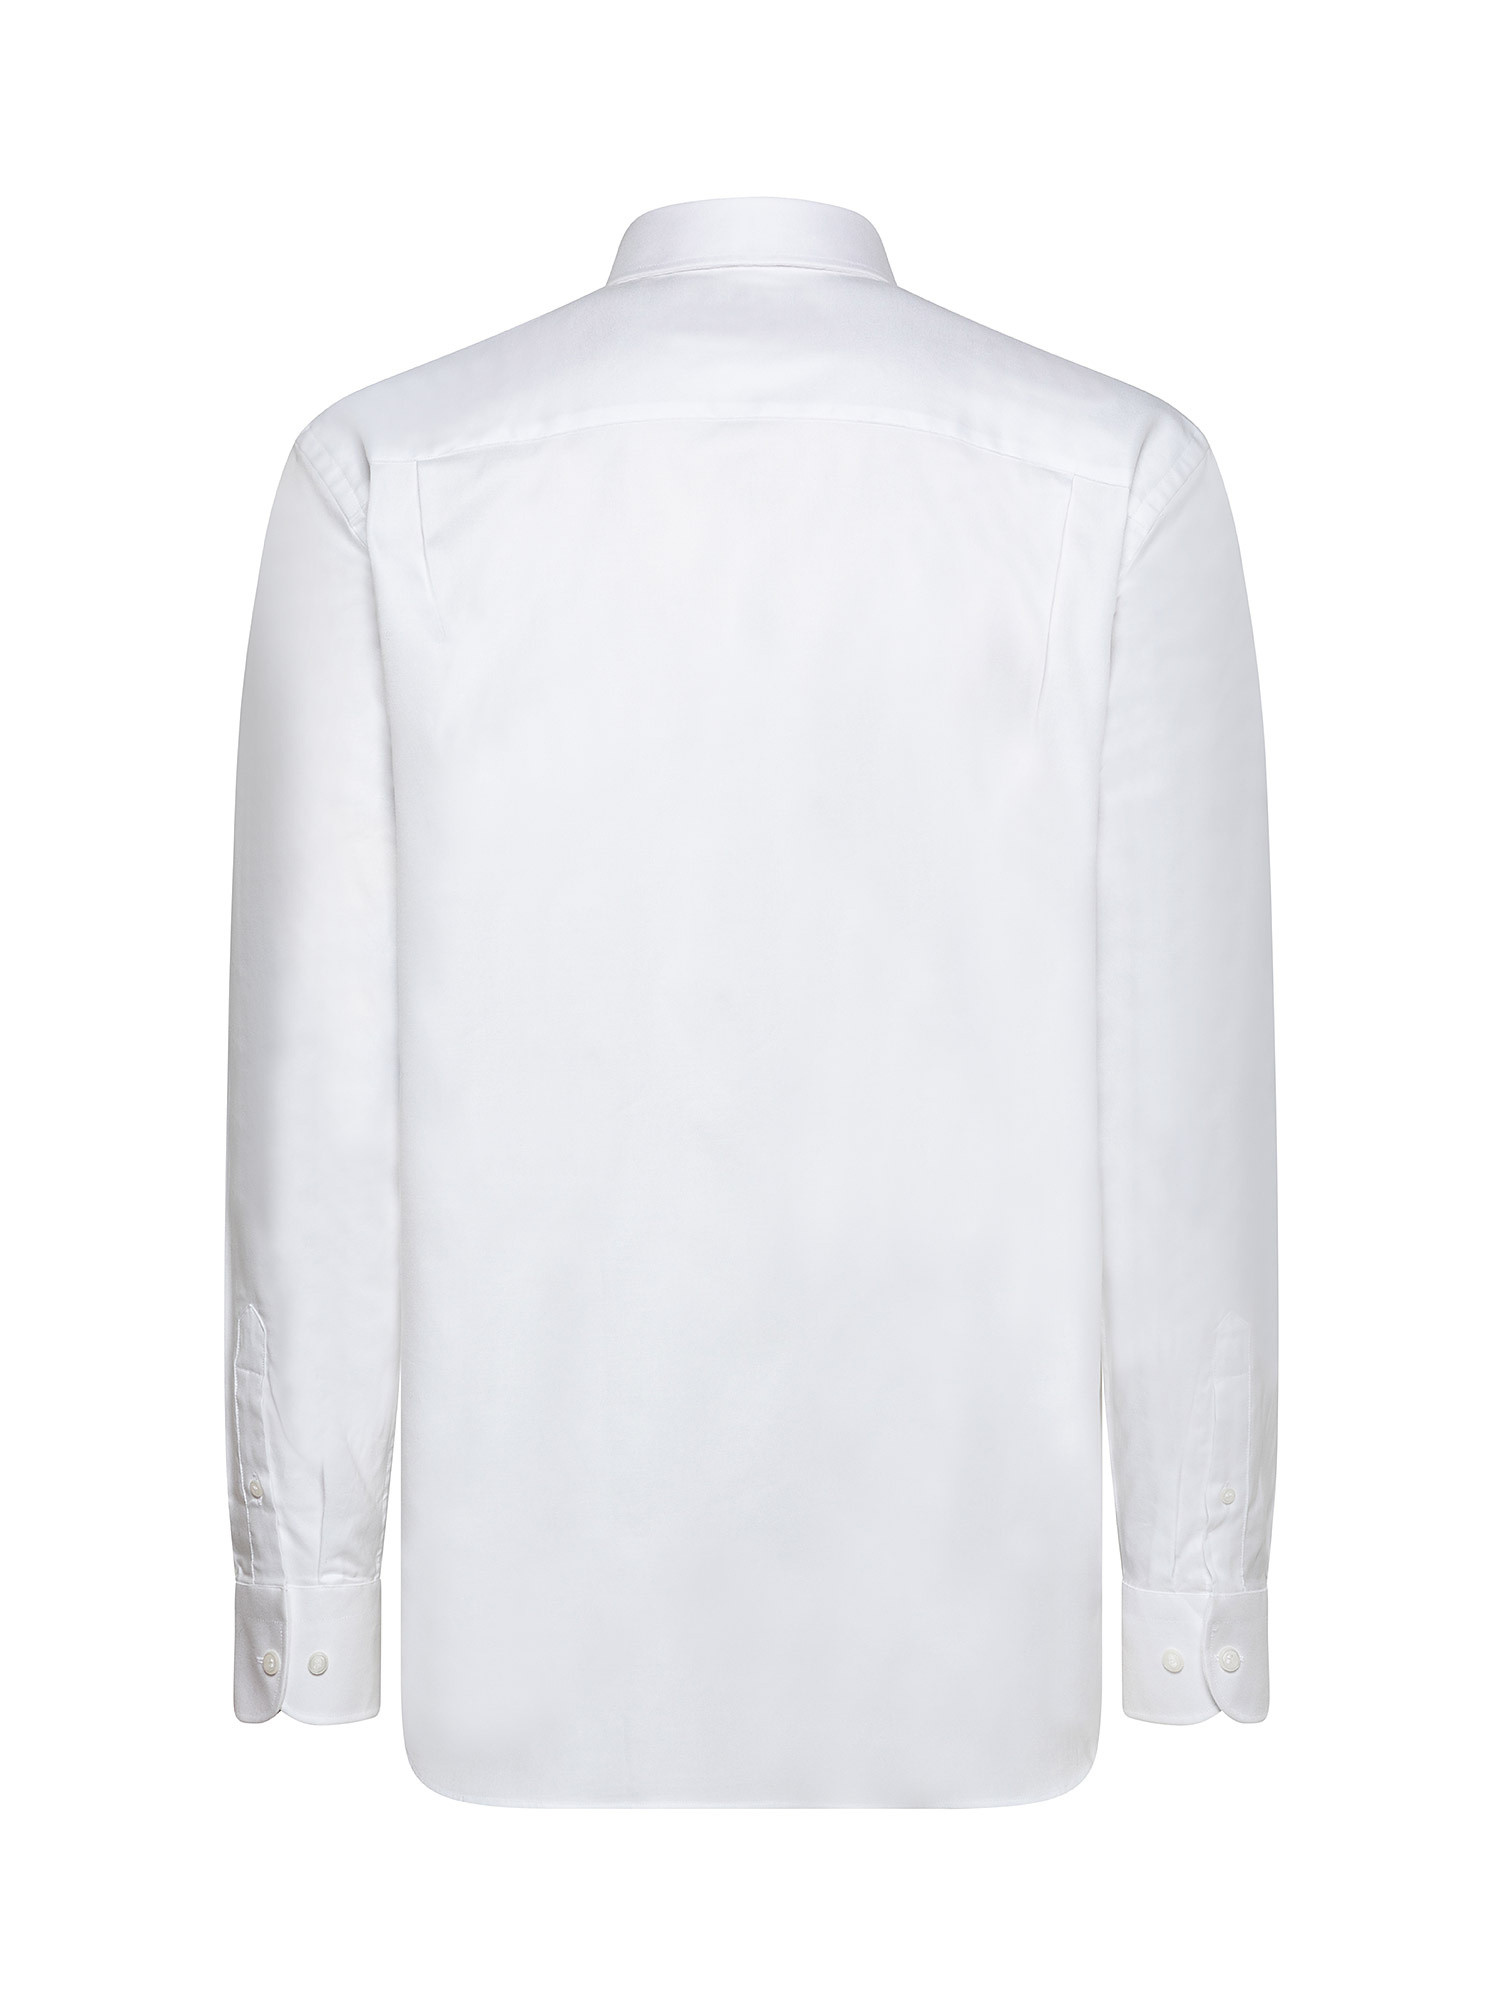 Camicia regular fit in cotone doppio ritorto, Bianco, large